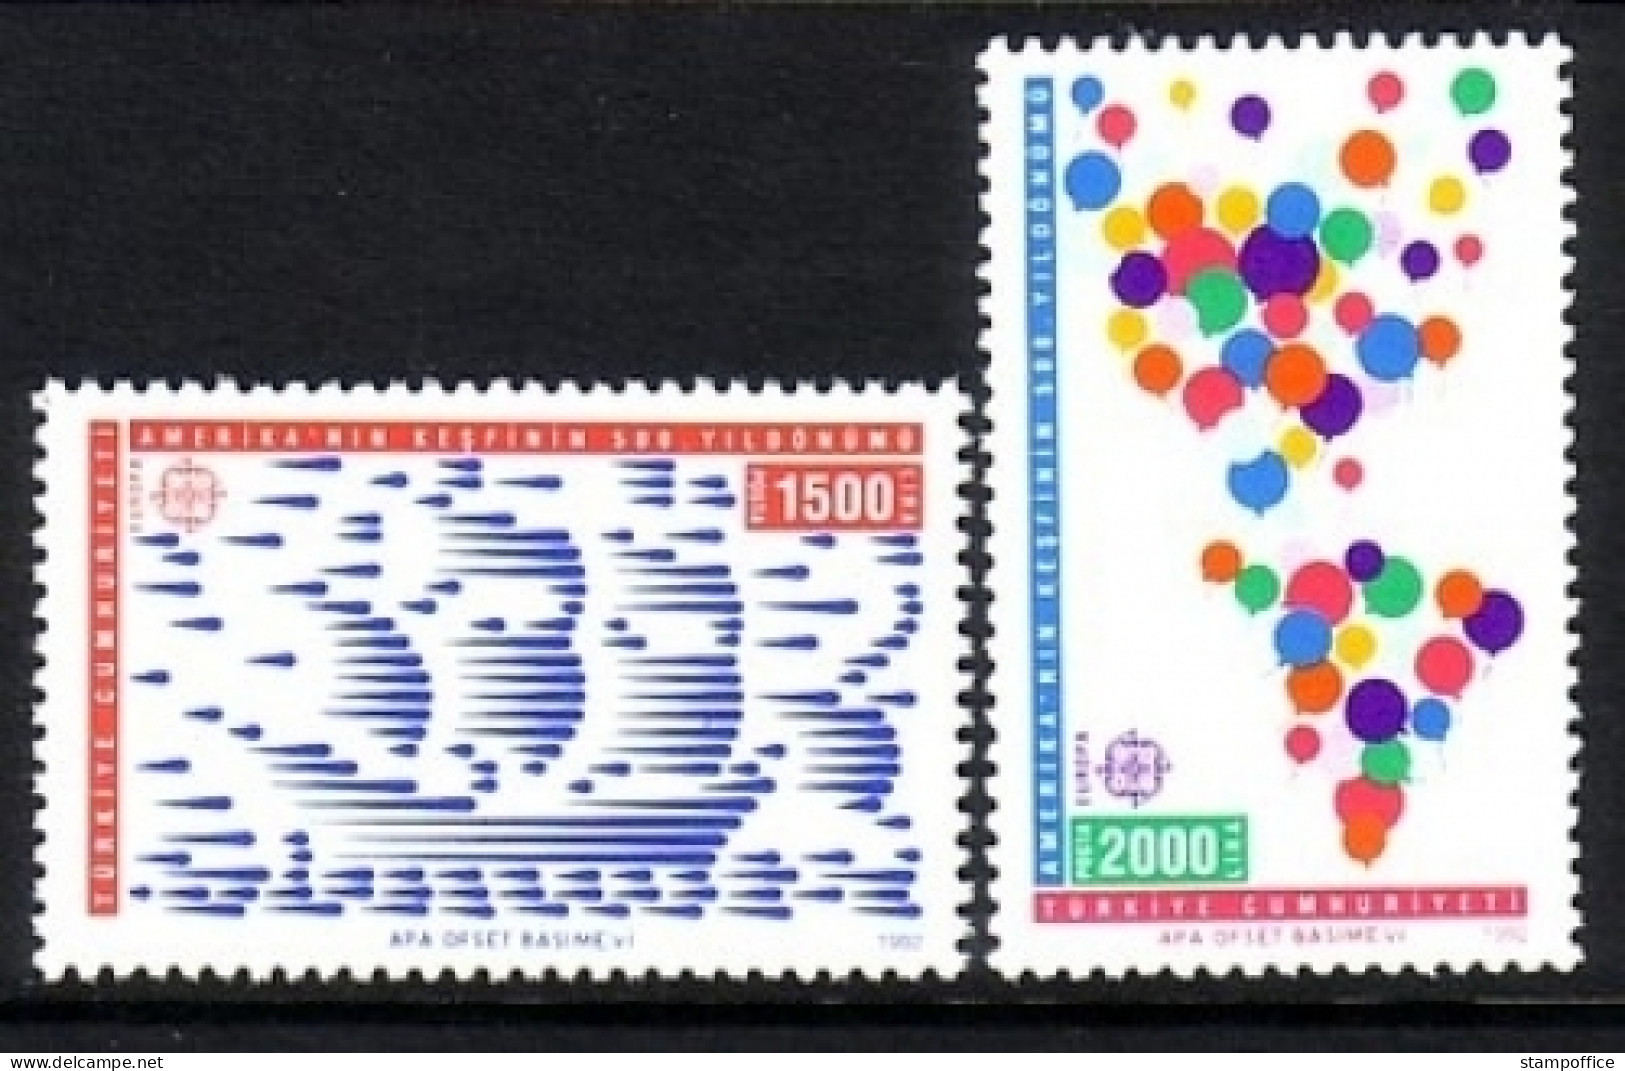 TÜRKEI 2947-2948 POSTFRISCH(MINT) EUROPA CEPT 1992 ENTDECKUNG AMERIKAS - COLUMBUS - Unused Stamps